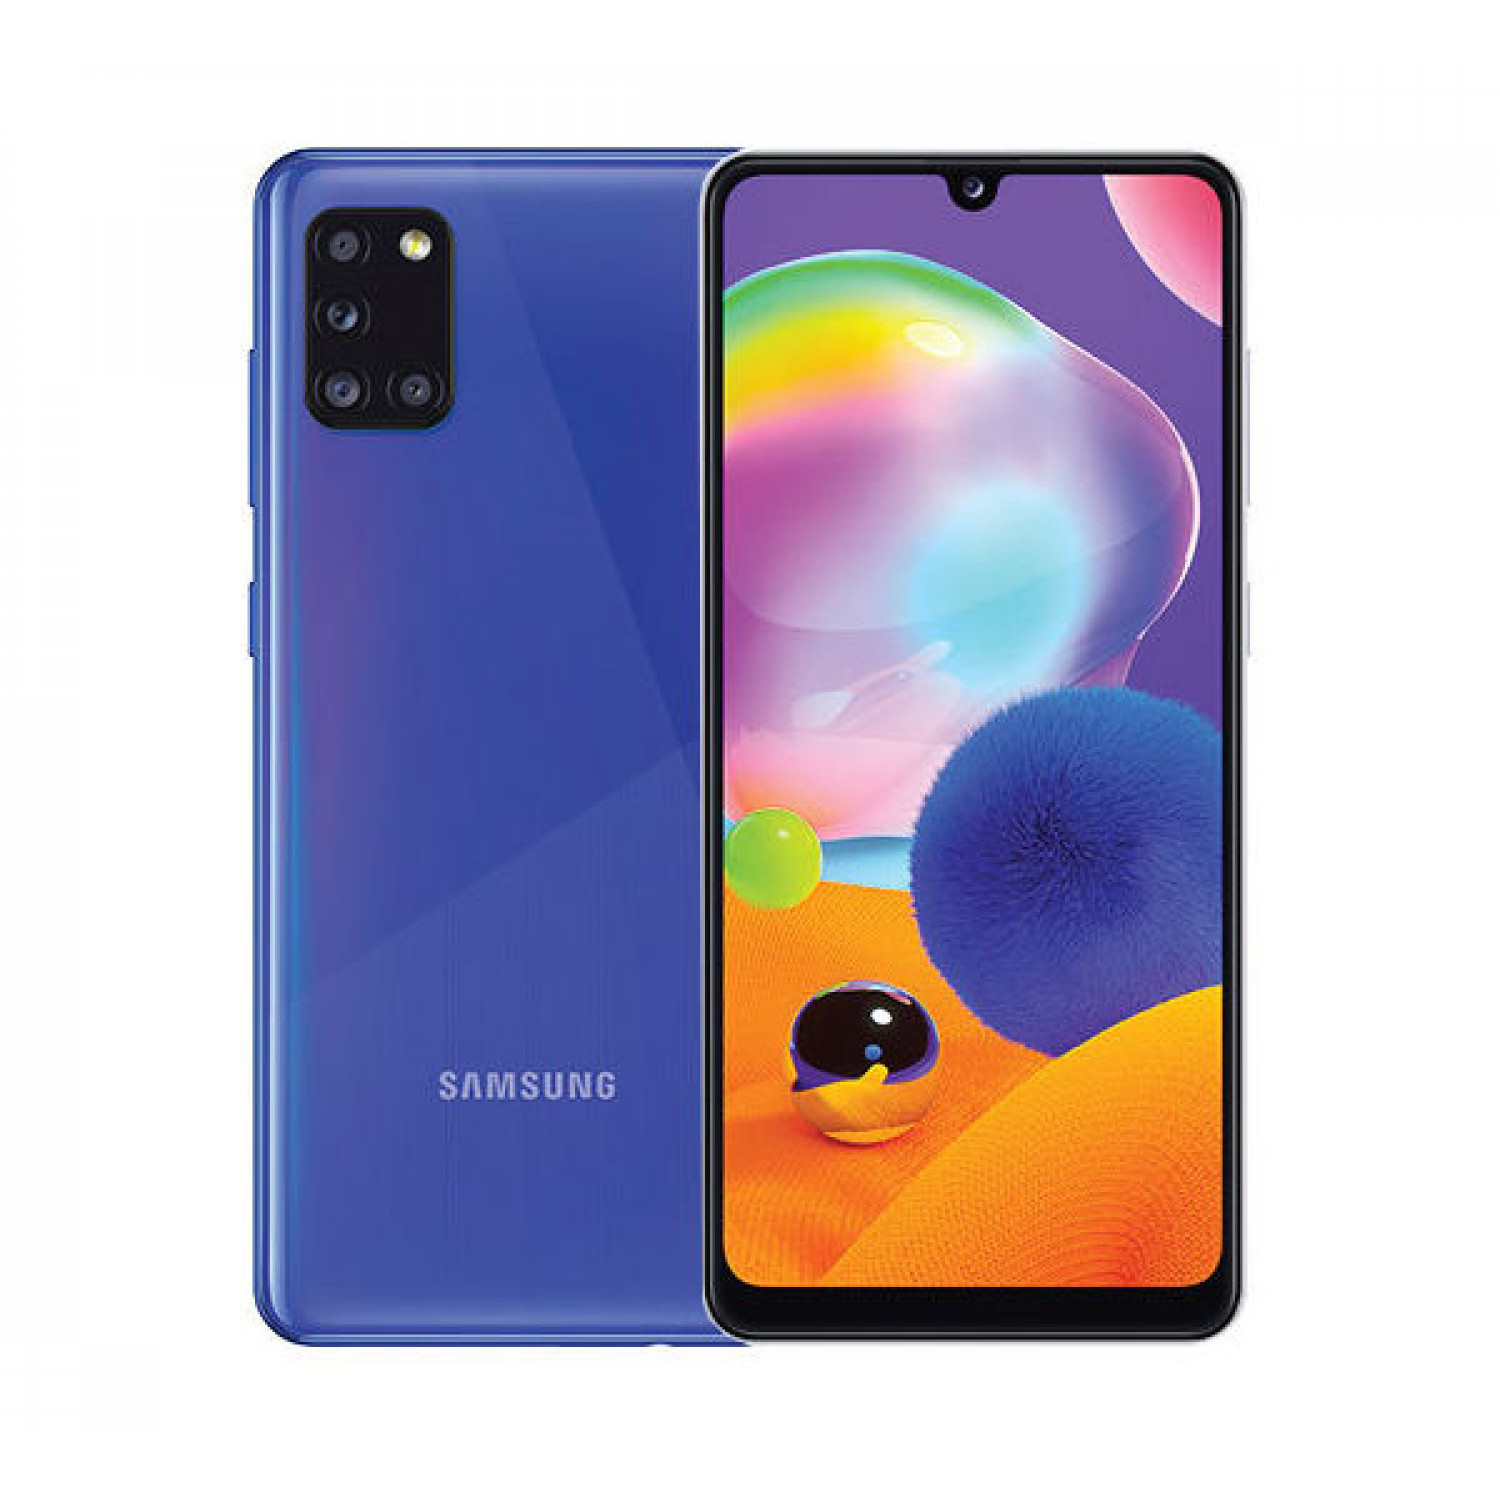 Samsung-galaxy-a31-dual-sim-prism-crush-blue-6gb-ram-128gb-4g-lte